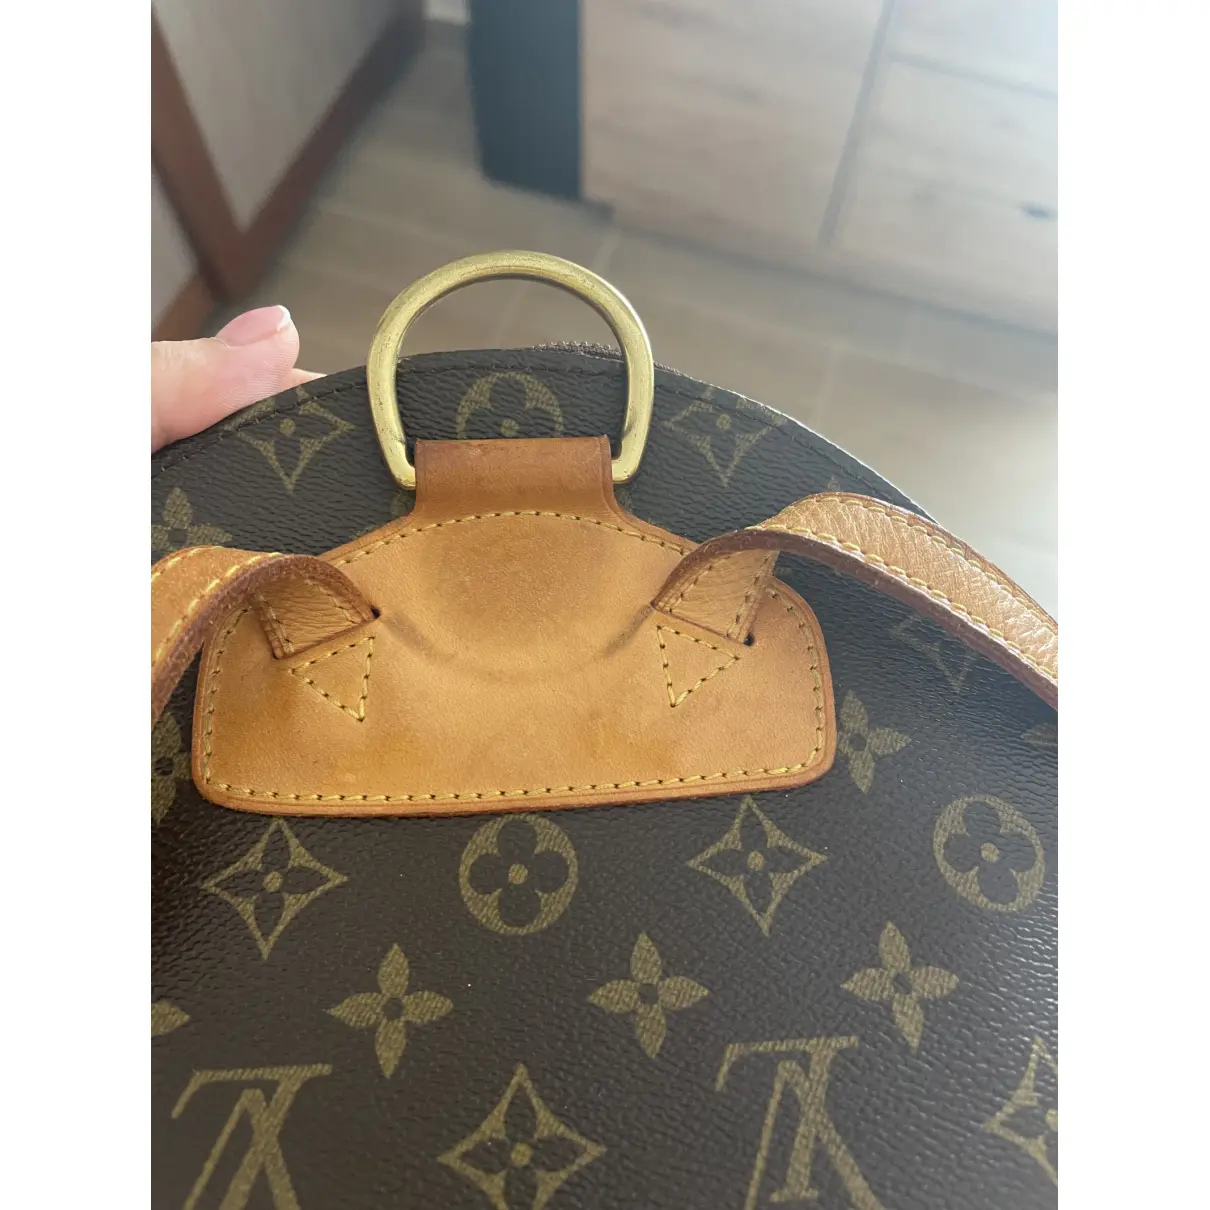 Ellipse cloth backpack Louis Vuitton